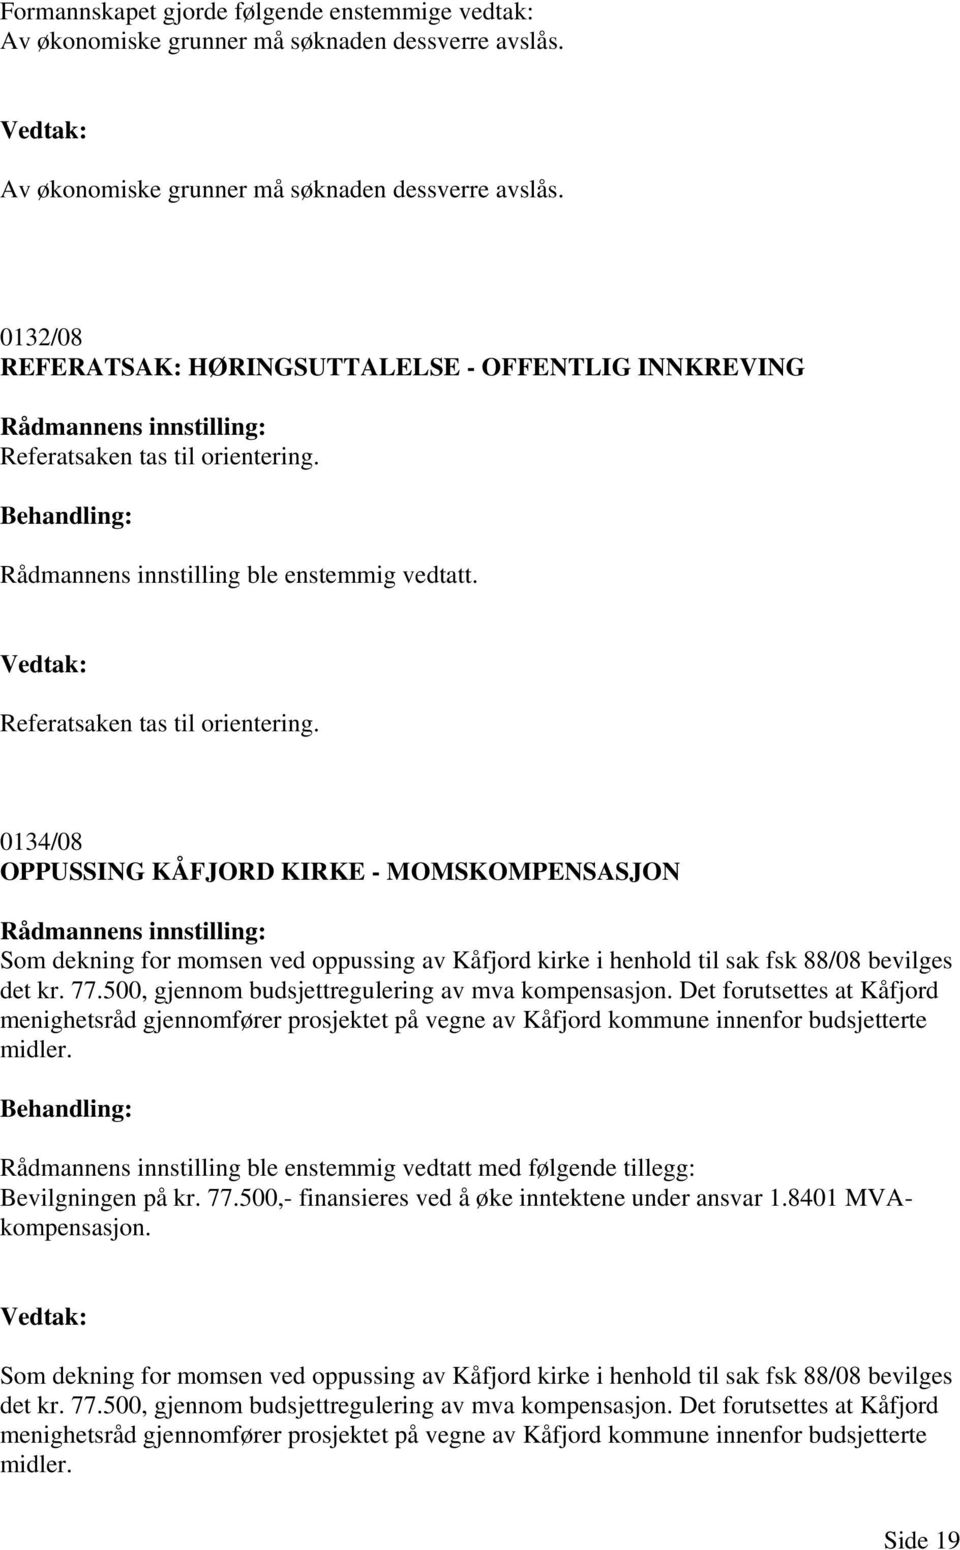 0134/08 OPPUSSING KÅFJORD KIRKE - MOMSKOMPENSASJON Som dekning for momsen ved oppussing av Kåfjord kirke i henhold til sak fsk 88/08 bevilges det kr. 77.